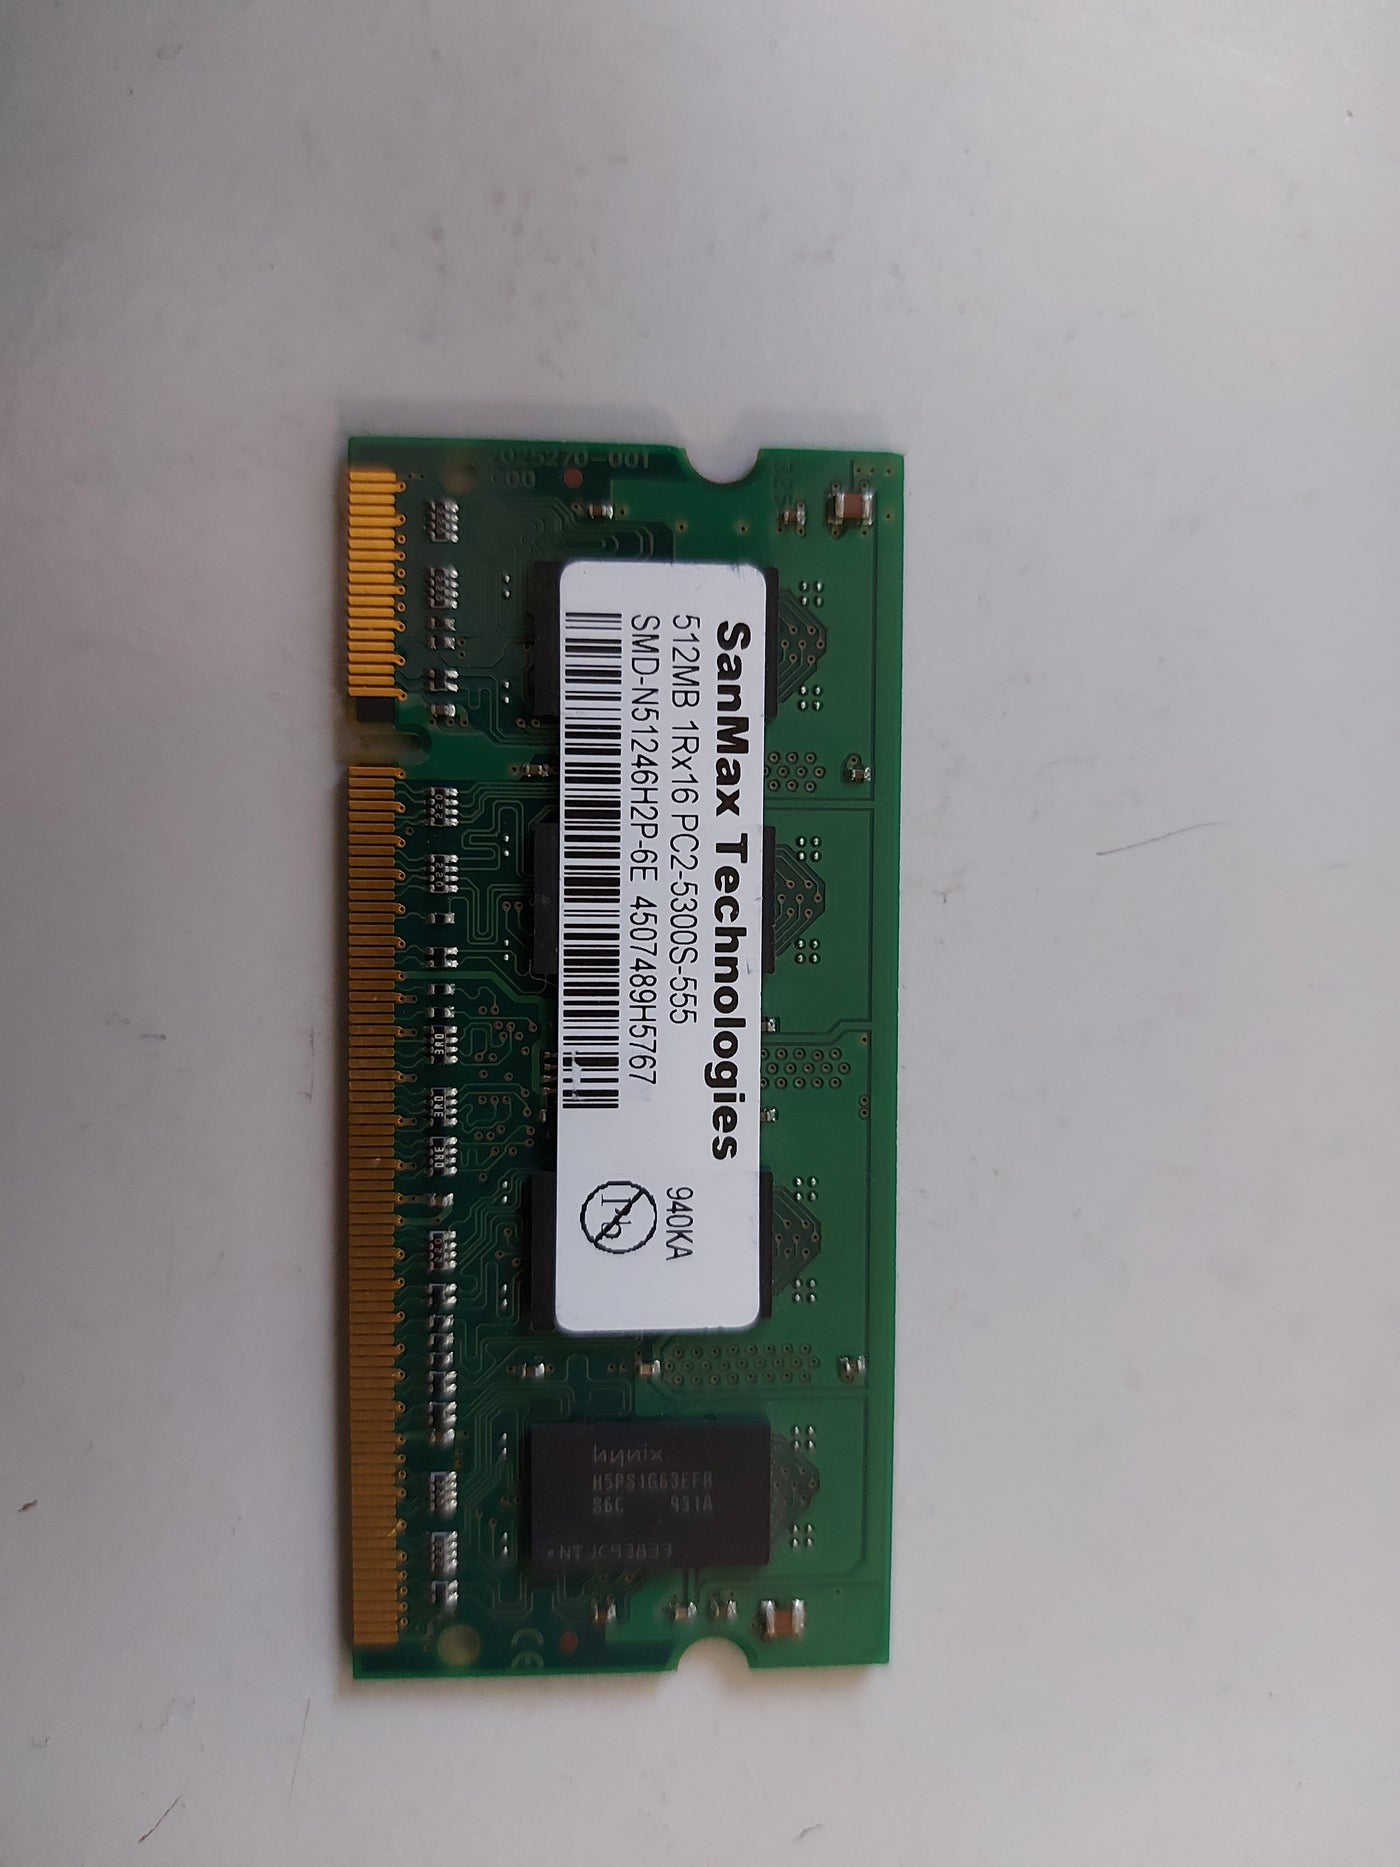 sanmax 512MB 1Rx16 PC2-5300S SODIMM Memory Module SMD-N51246H2P-6E